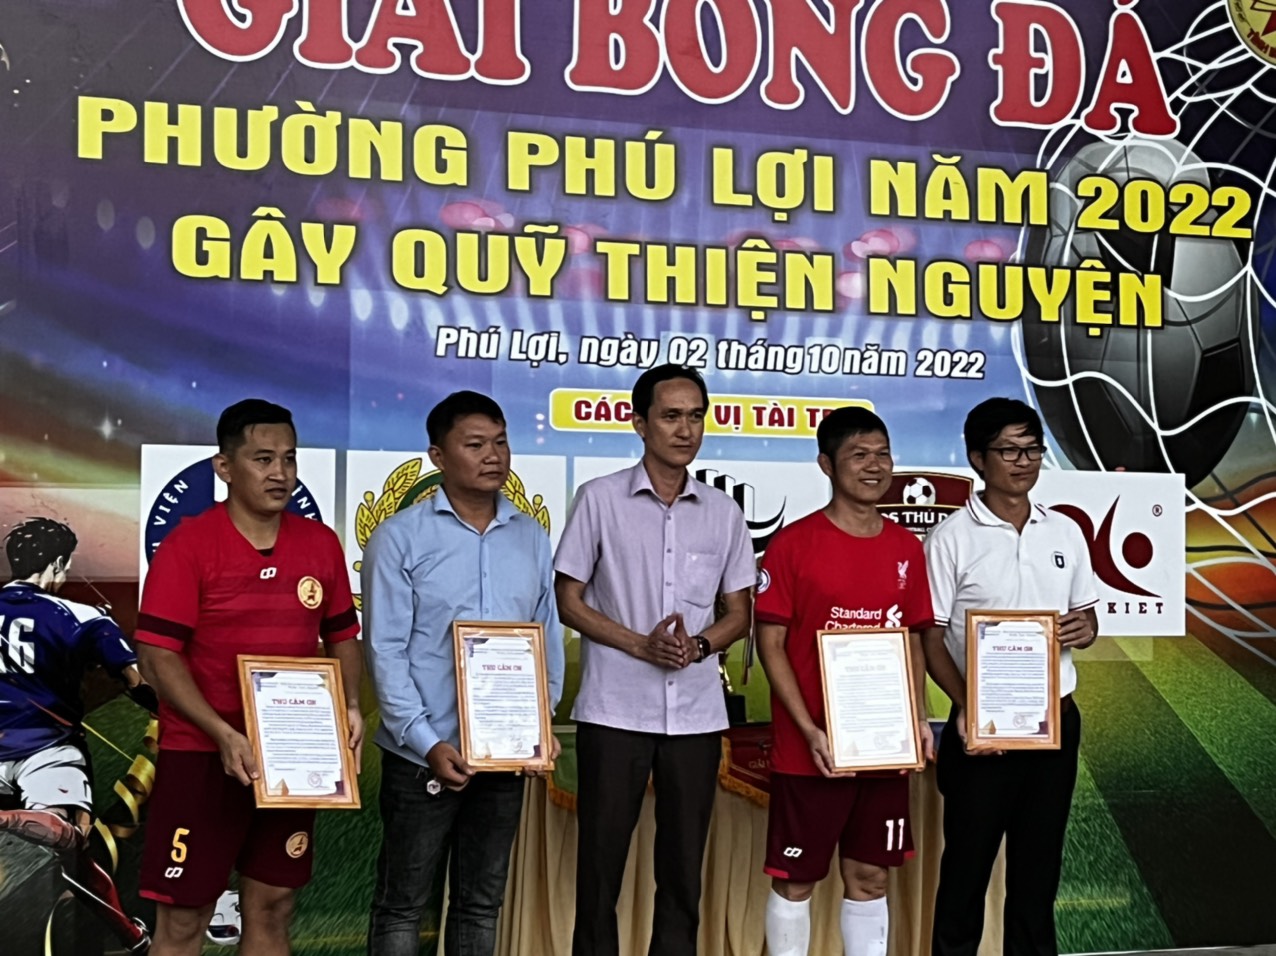 Nhân Kiệt cùng chương trình Giải bóng đá gây quỹ thiện nguyện tại Phường Phú Lợi